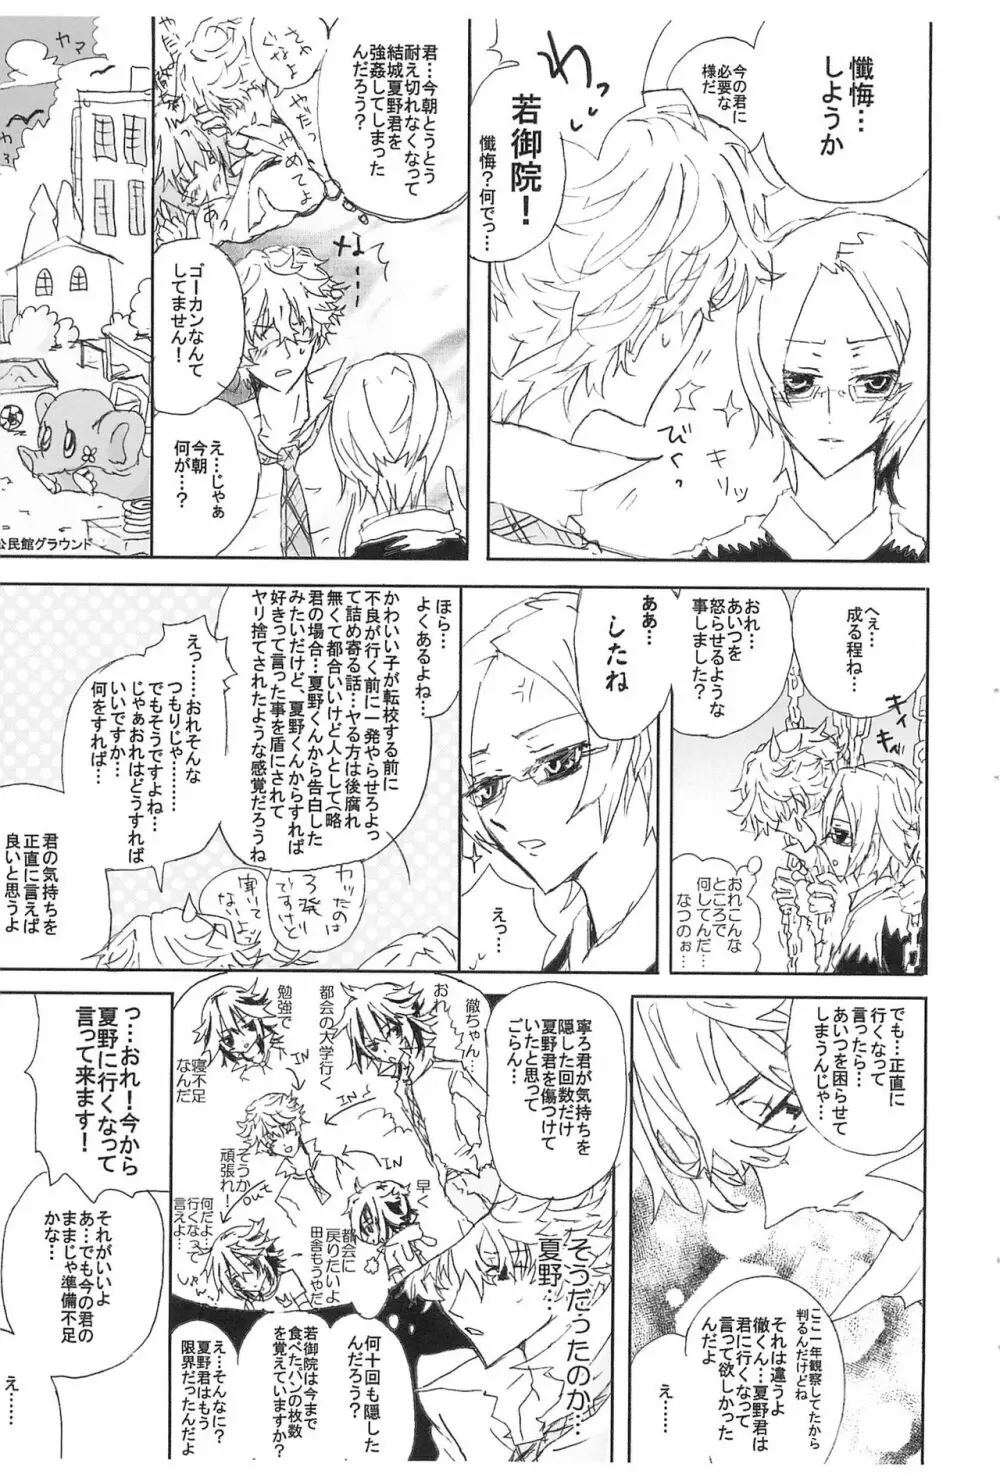 Shiki-hon 6 17ページ